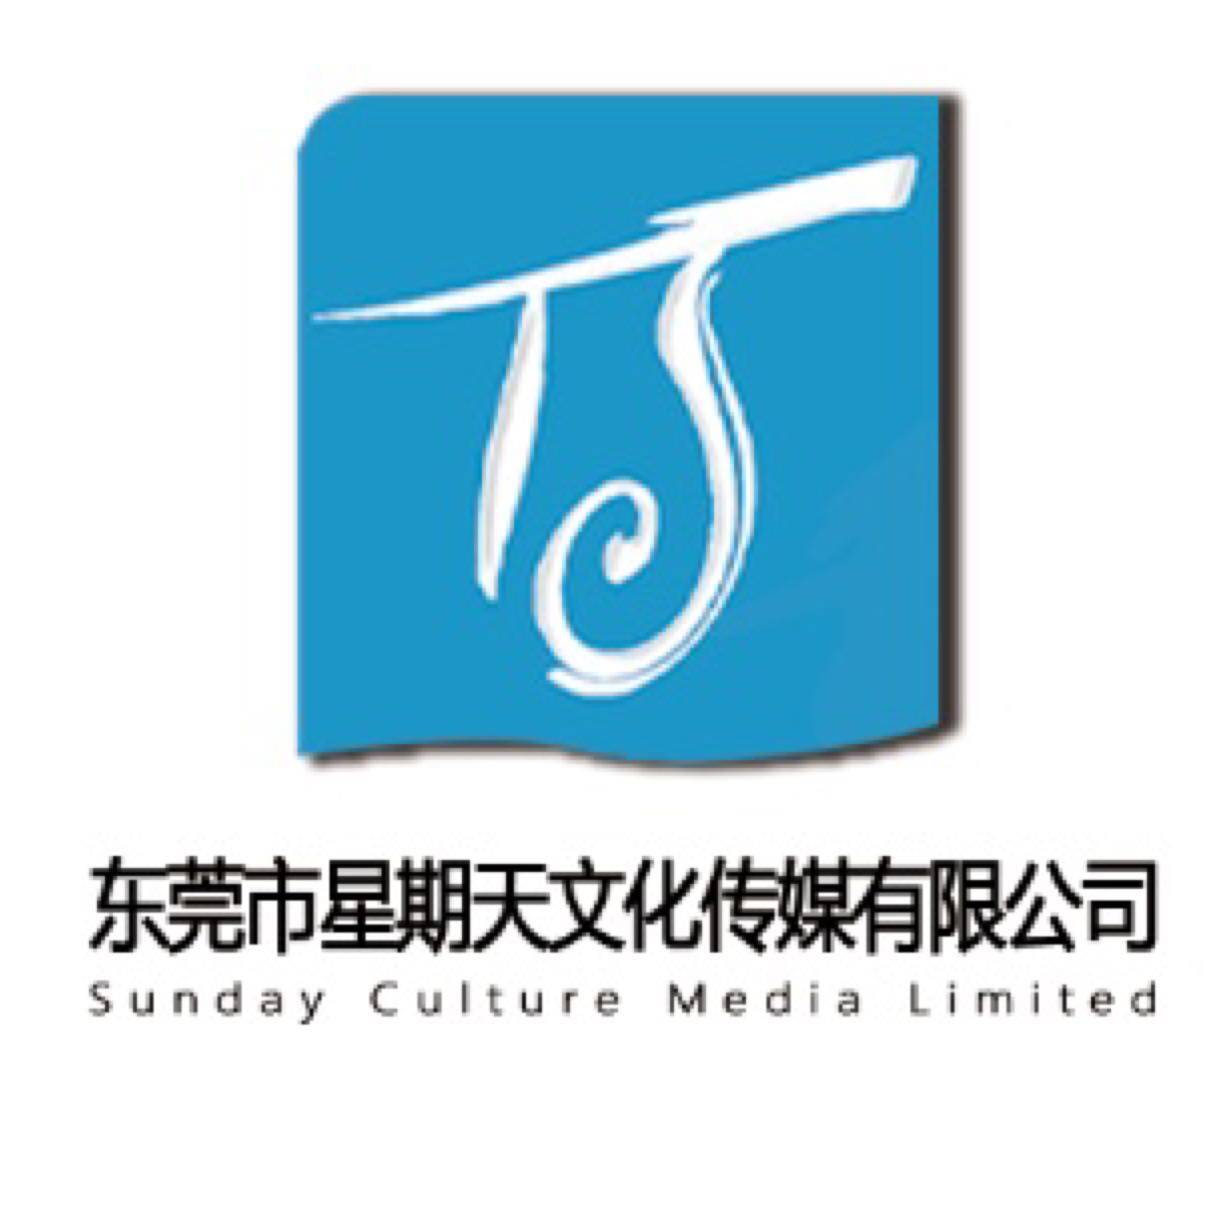 东莞市星期天文化传媒有限公司logo